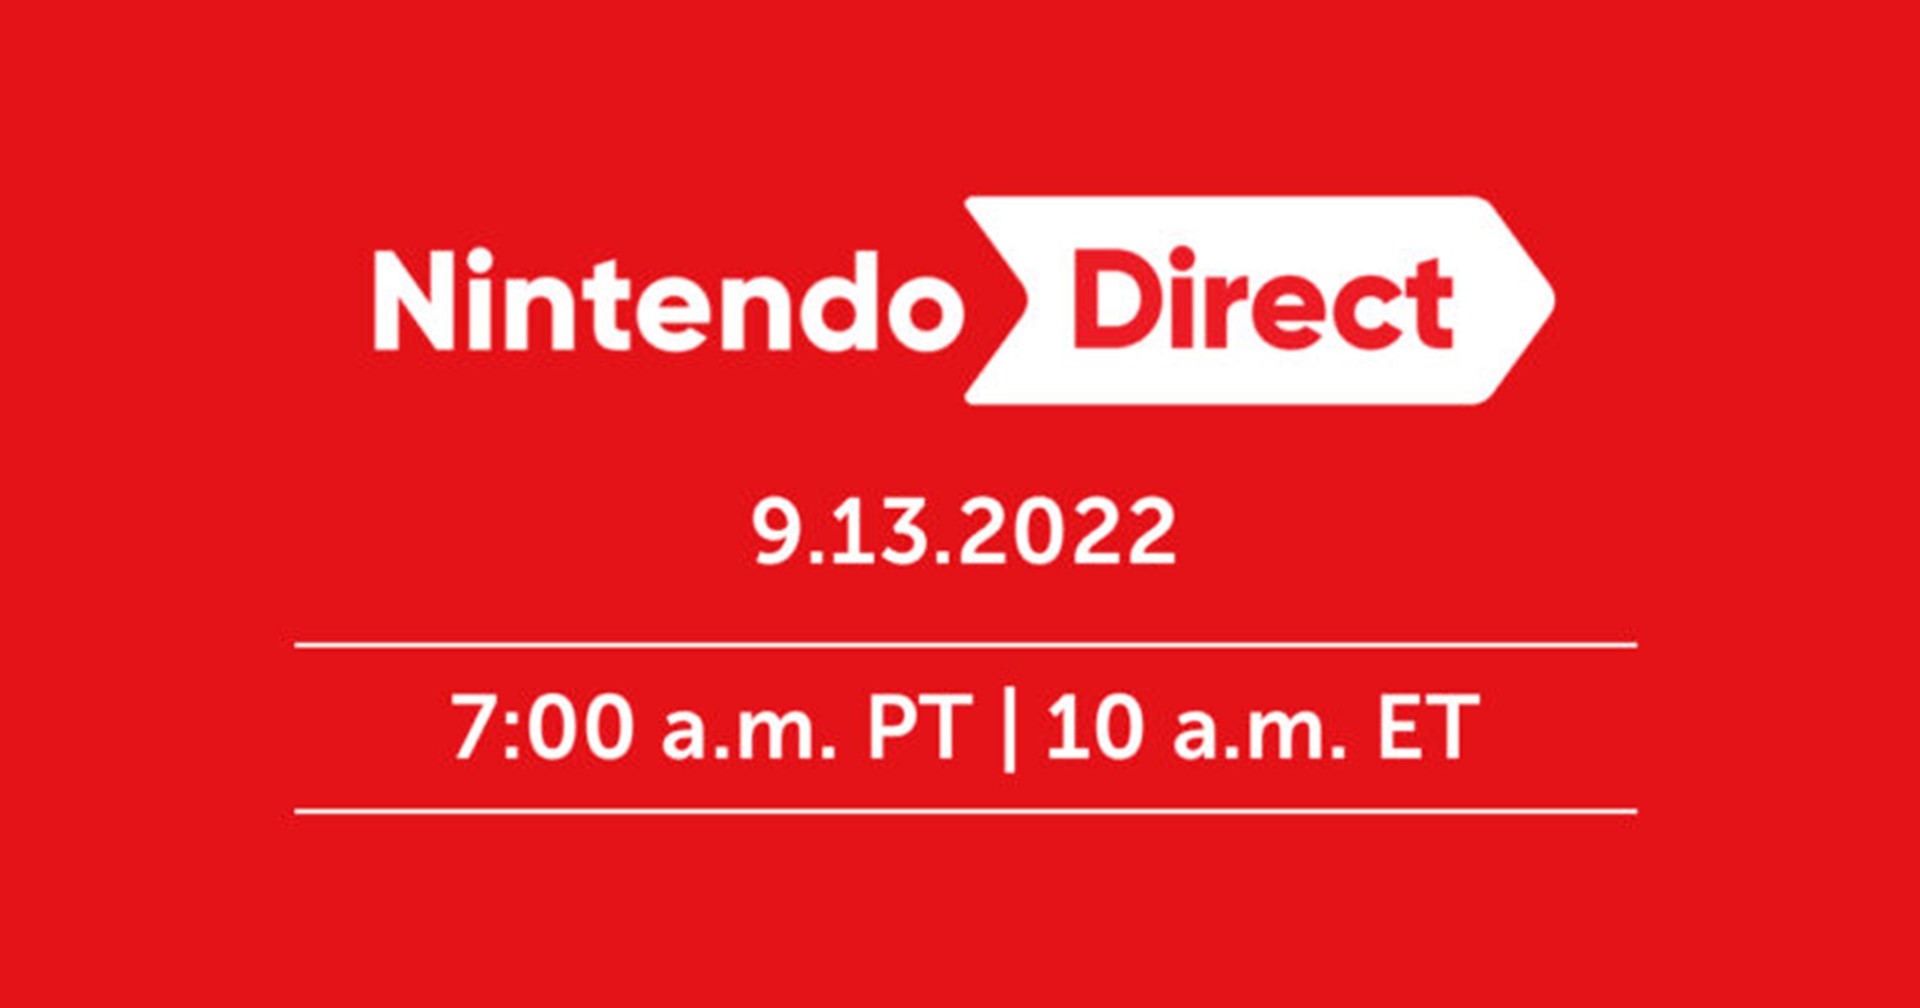 รวมข้อมูลเกมเปิดตัวในงาน Nintendo Direct ที่ปู่นินเปิดชื่อ Zelda ภาคใหม่แล้ว